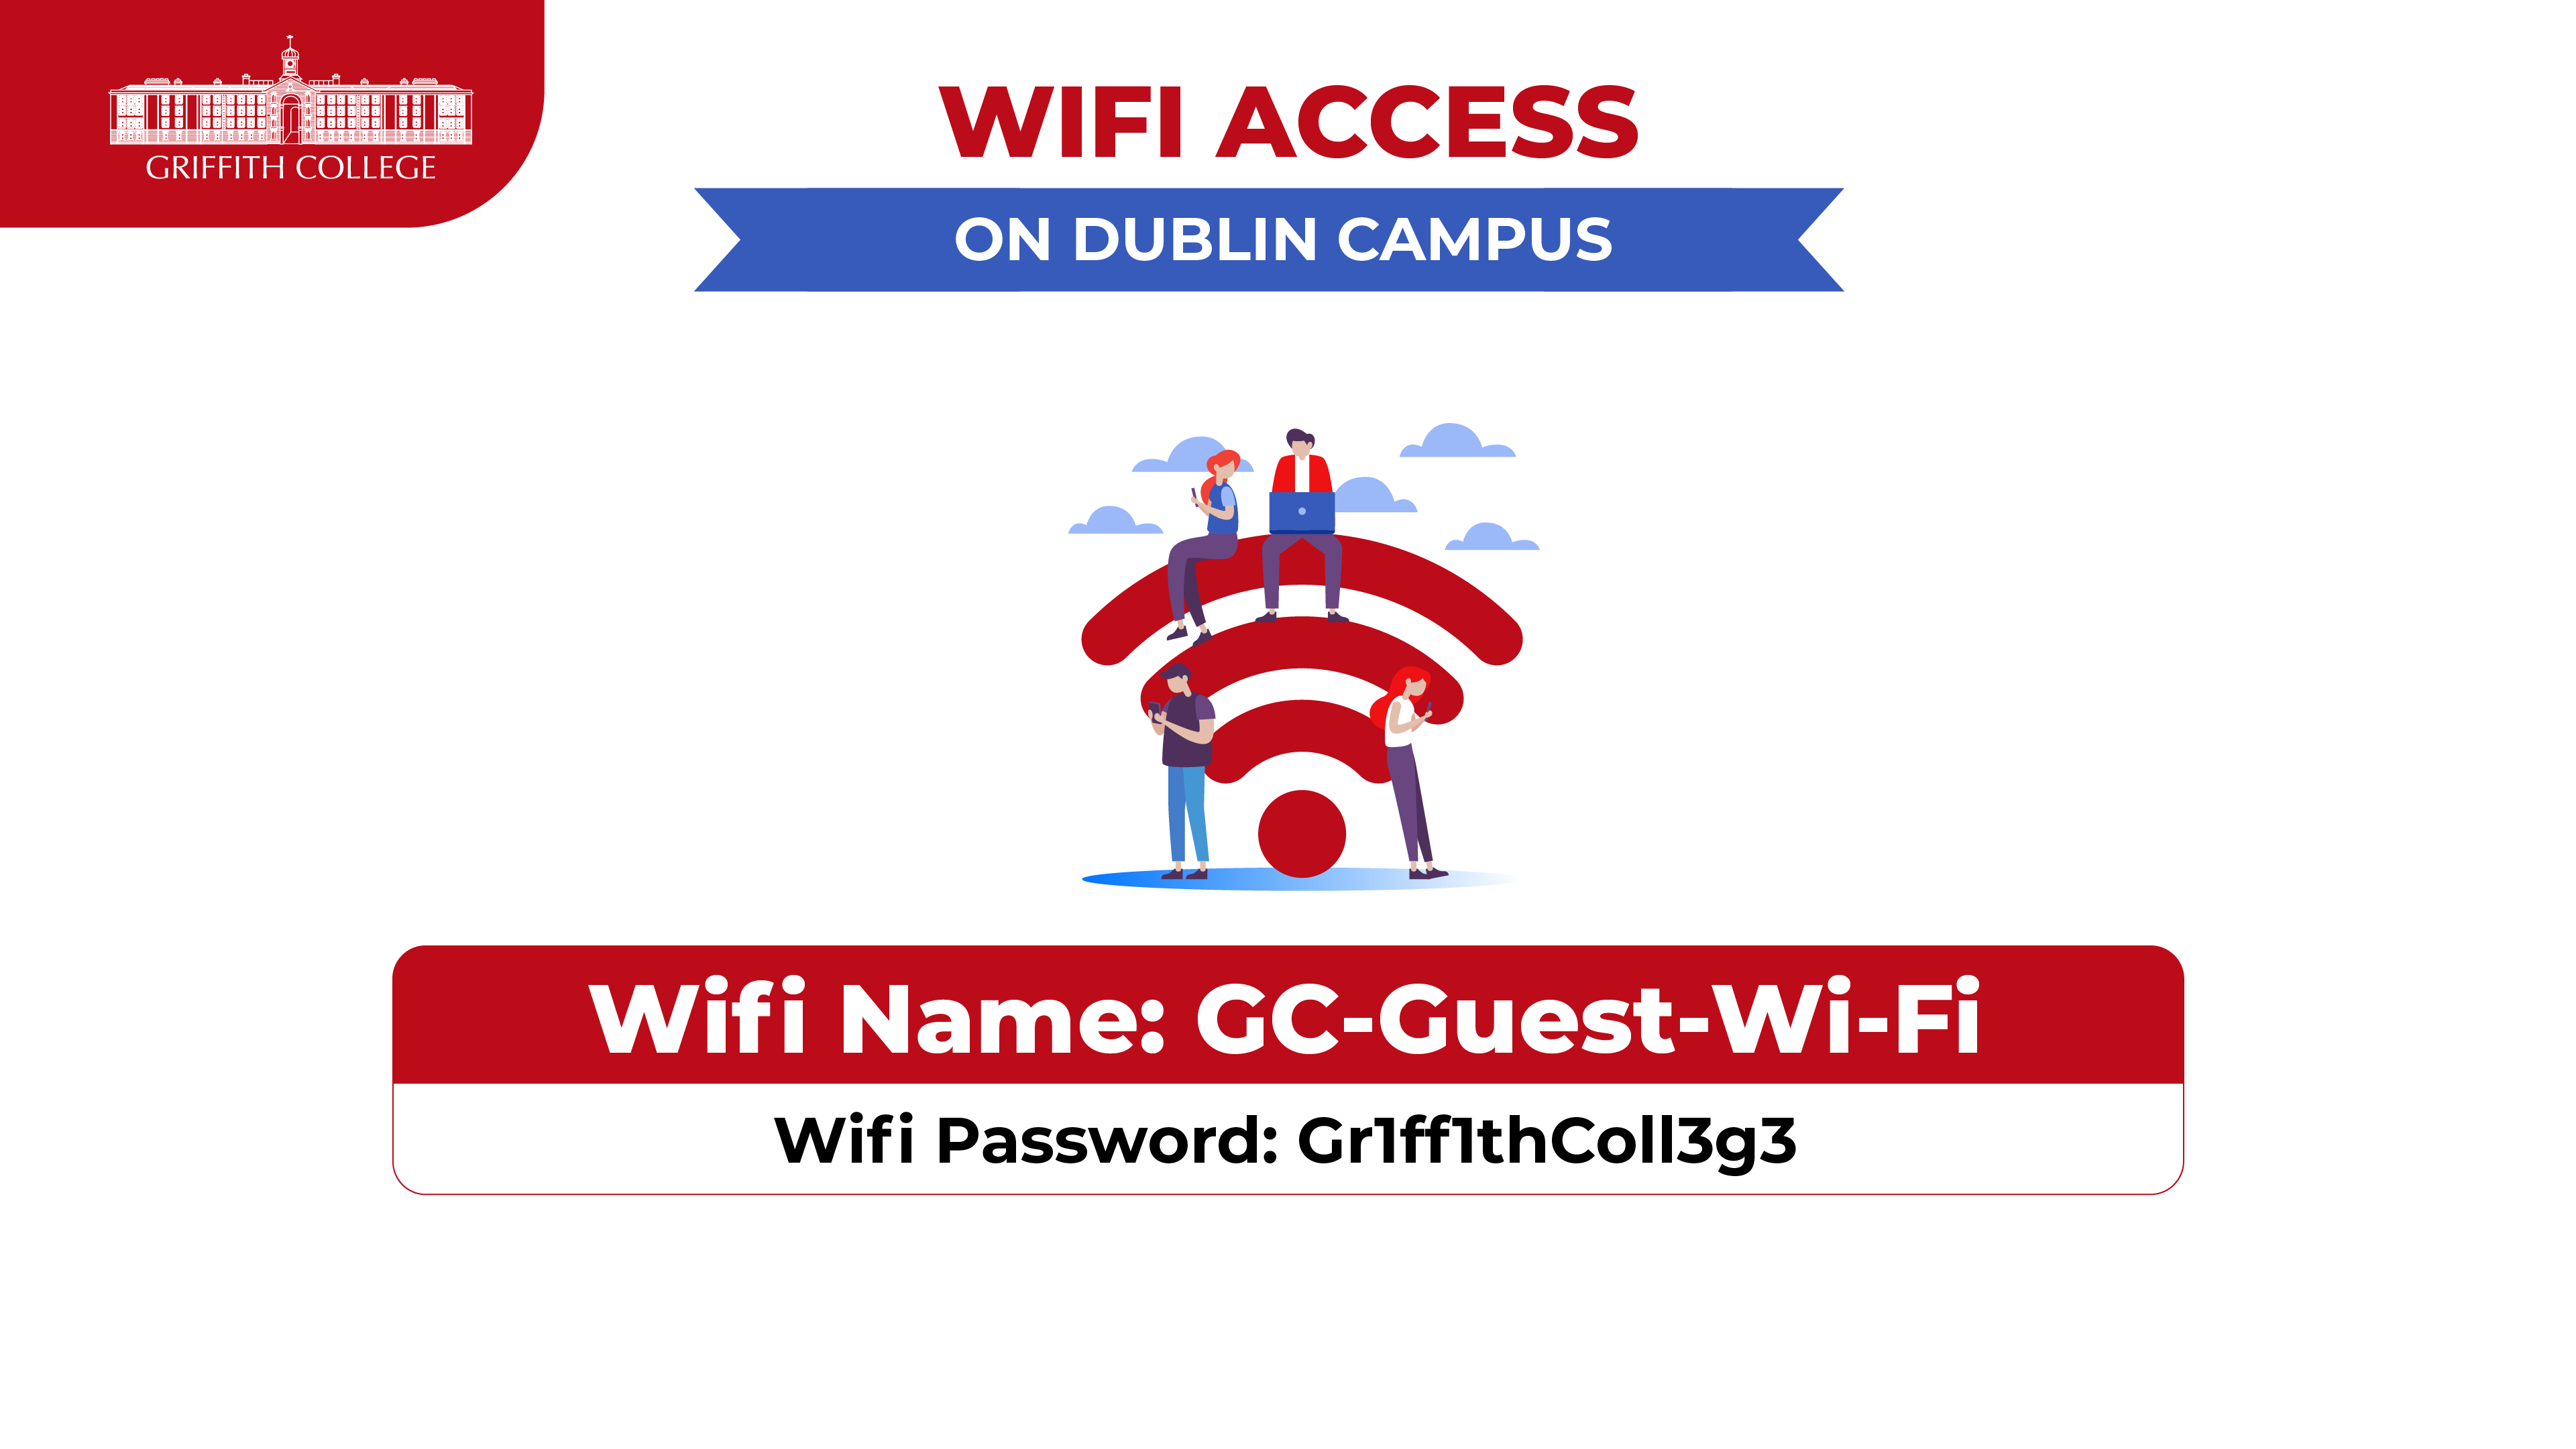 Dublin campus wifi access